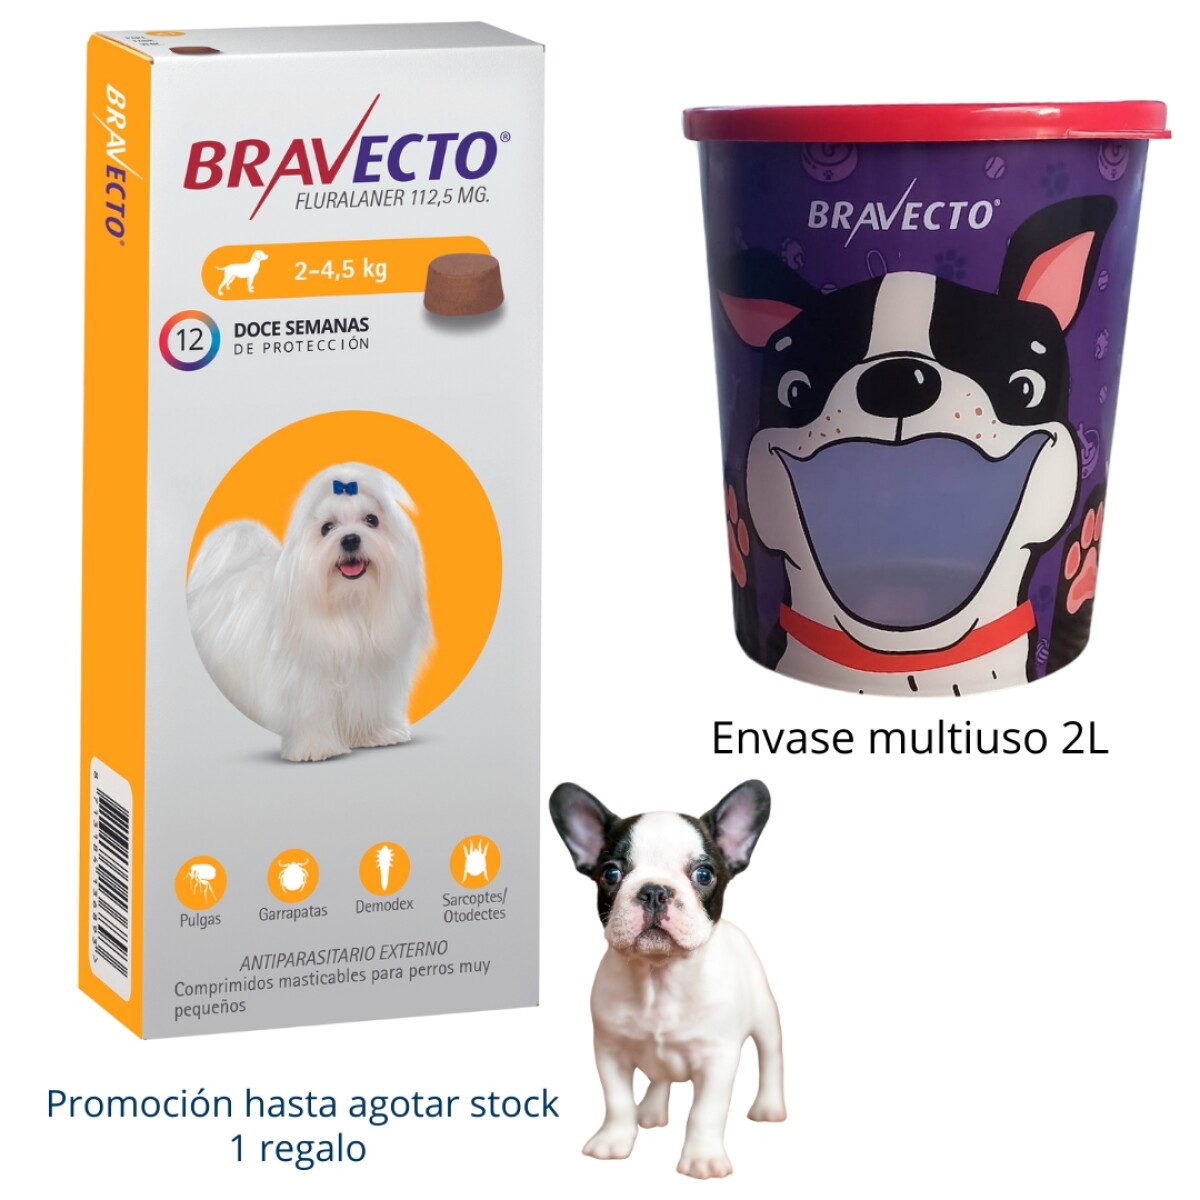 Bravecto 2 - 4.5 Kg 